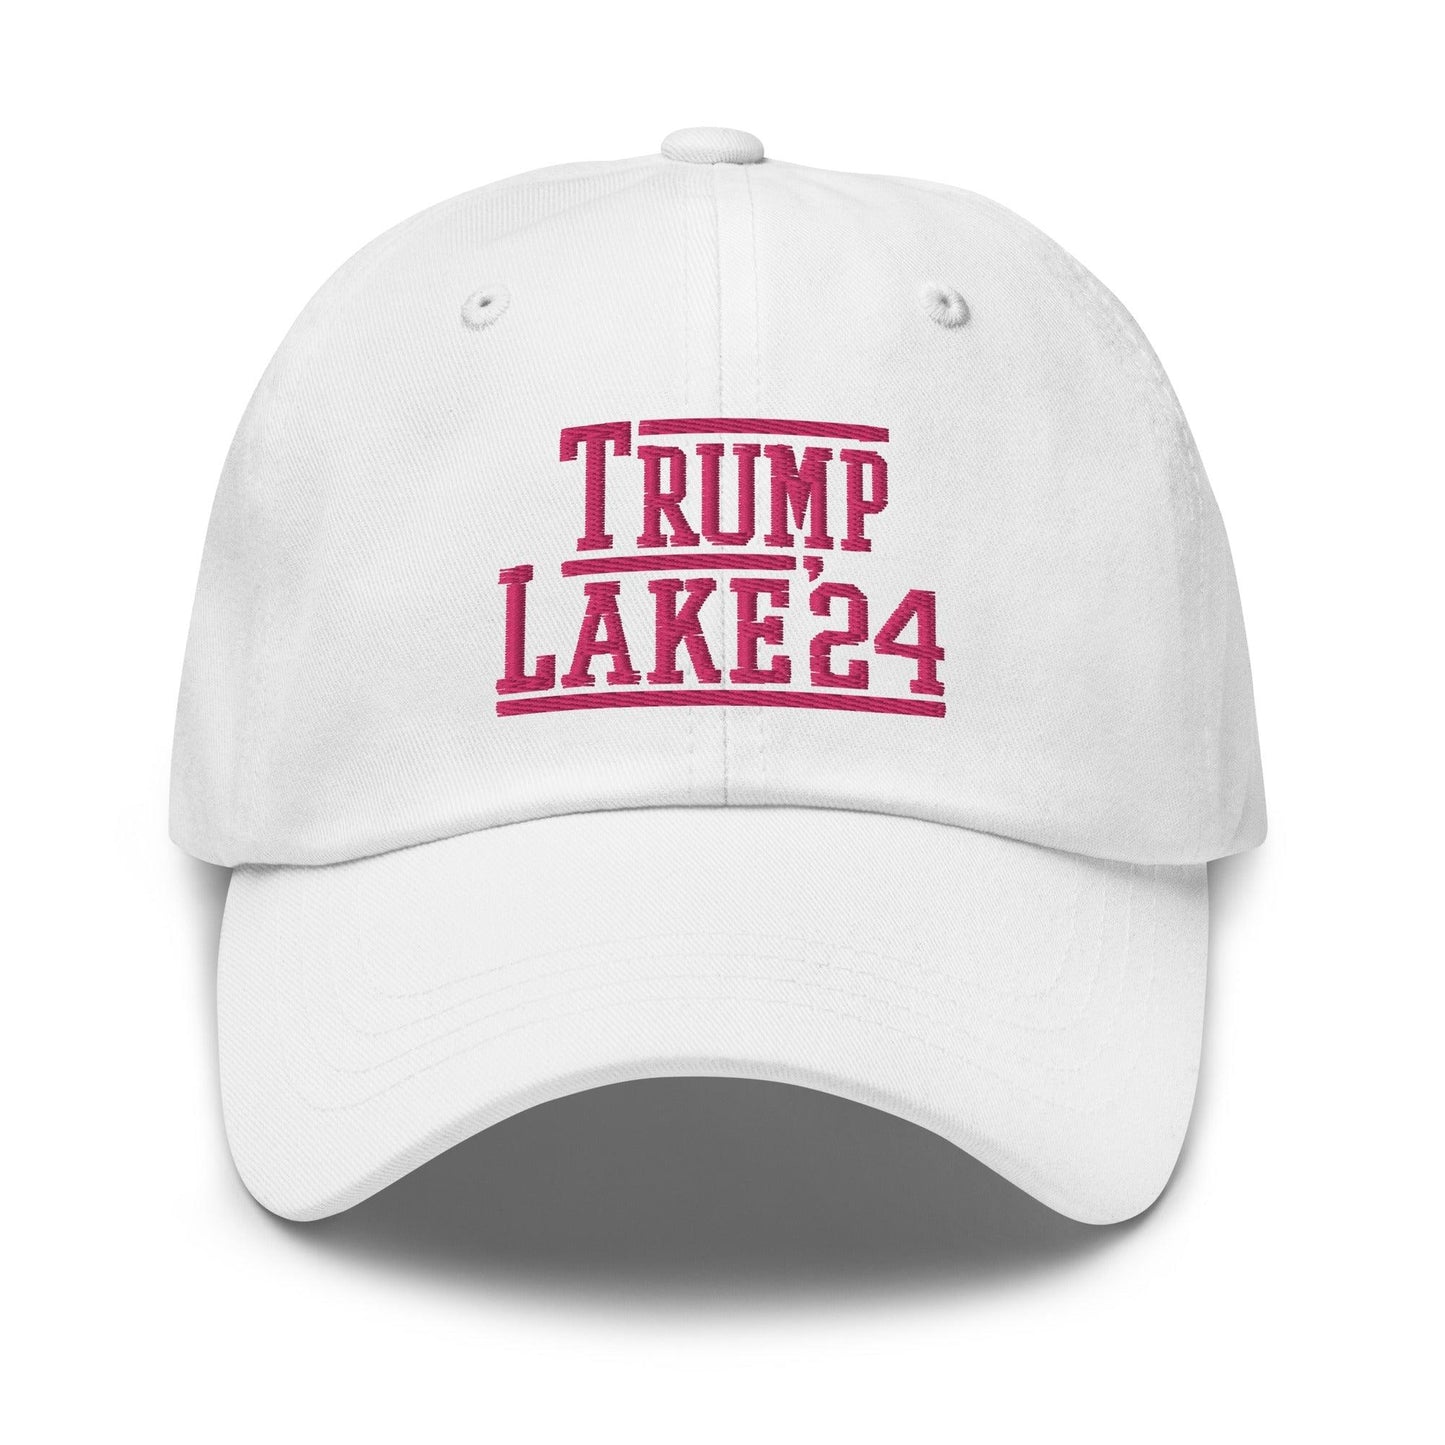 Donald Trump Kari Lake 2024 Dad Hat White